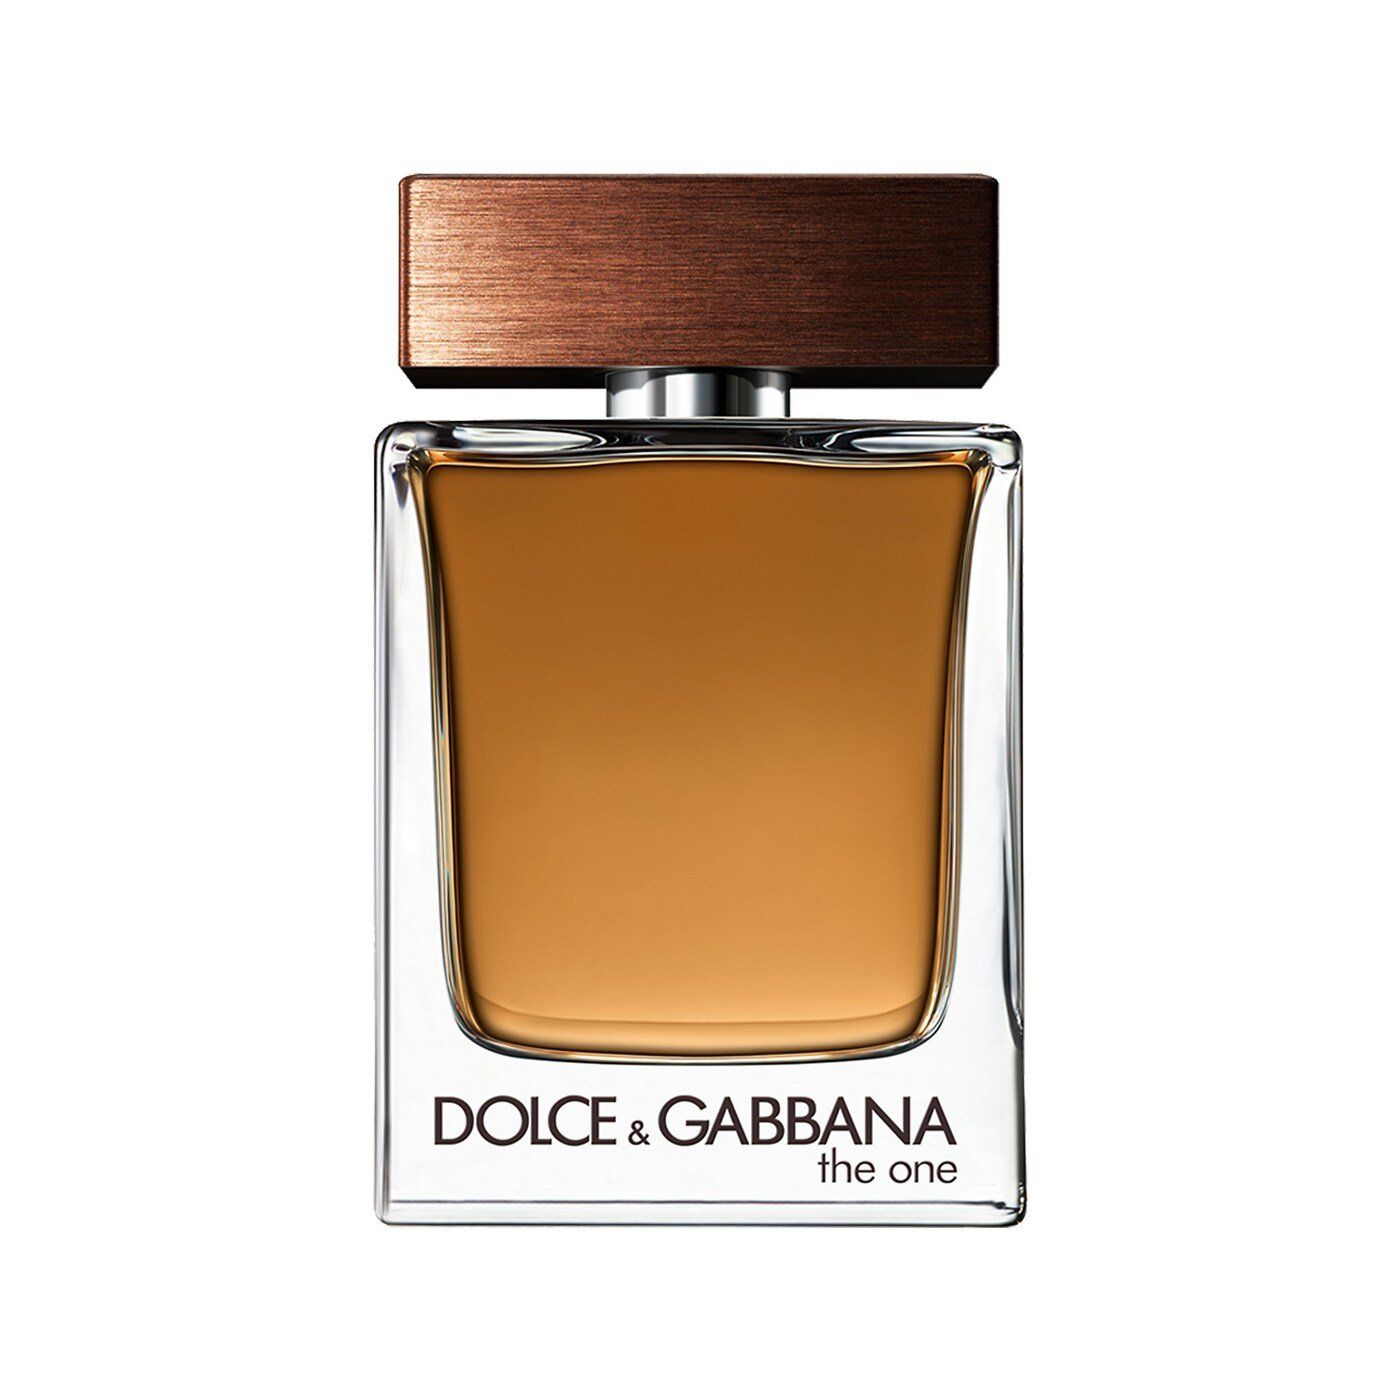  Dolce & Gabbana The One Eau de Toilette for Men 